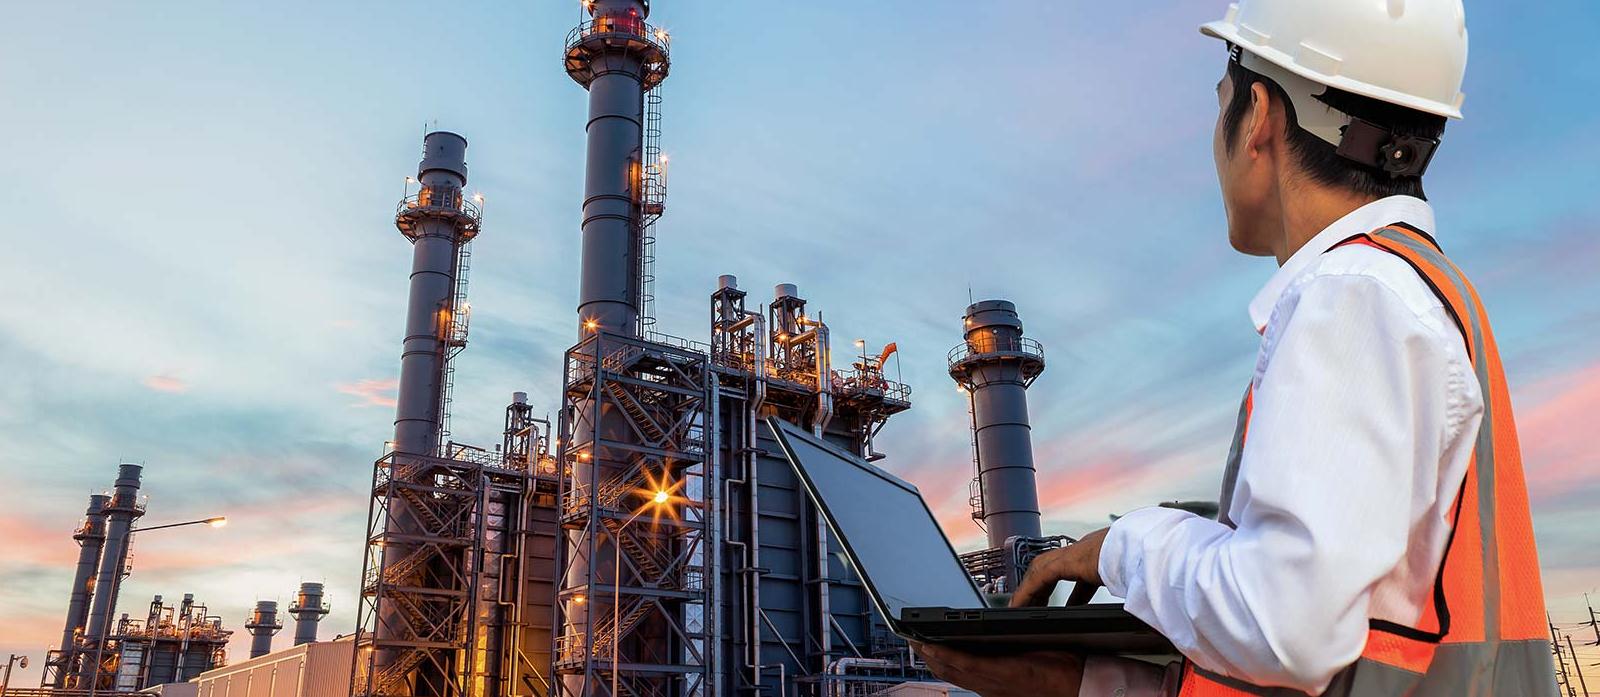 شرکت سازه صنعت سنا فارس : سازنده و تامین کننده تجهیزات ثابت صنایع نفت، گاز، پتروشیمی و فولاد